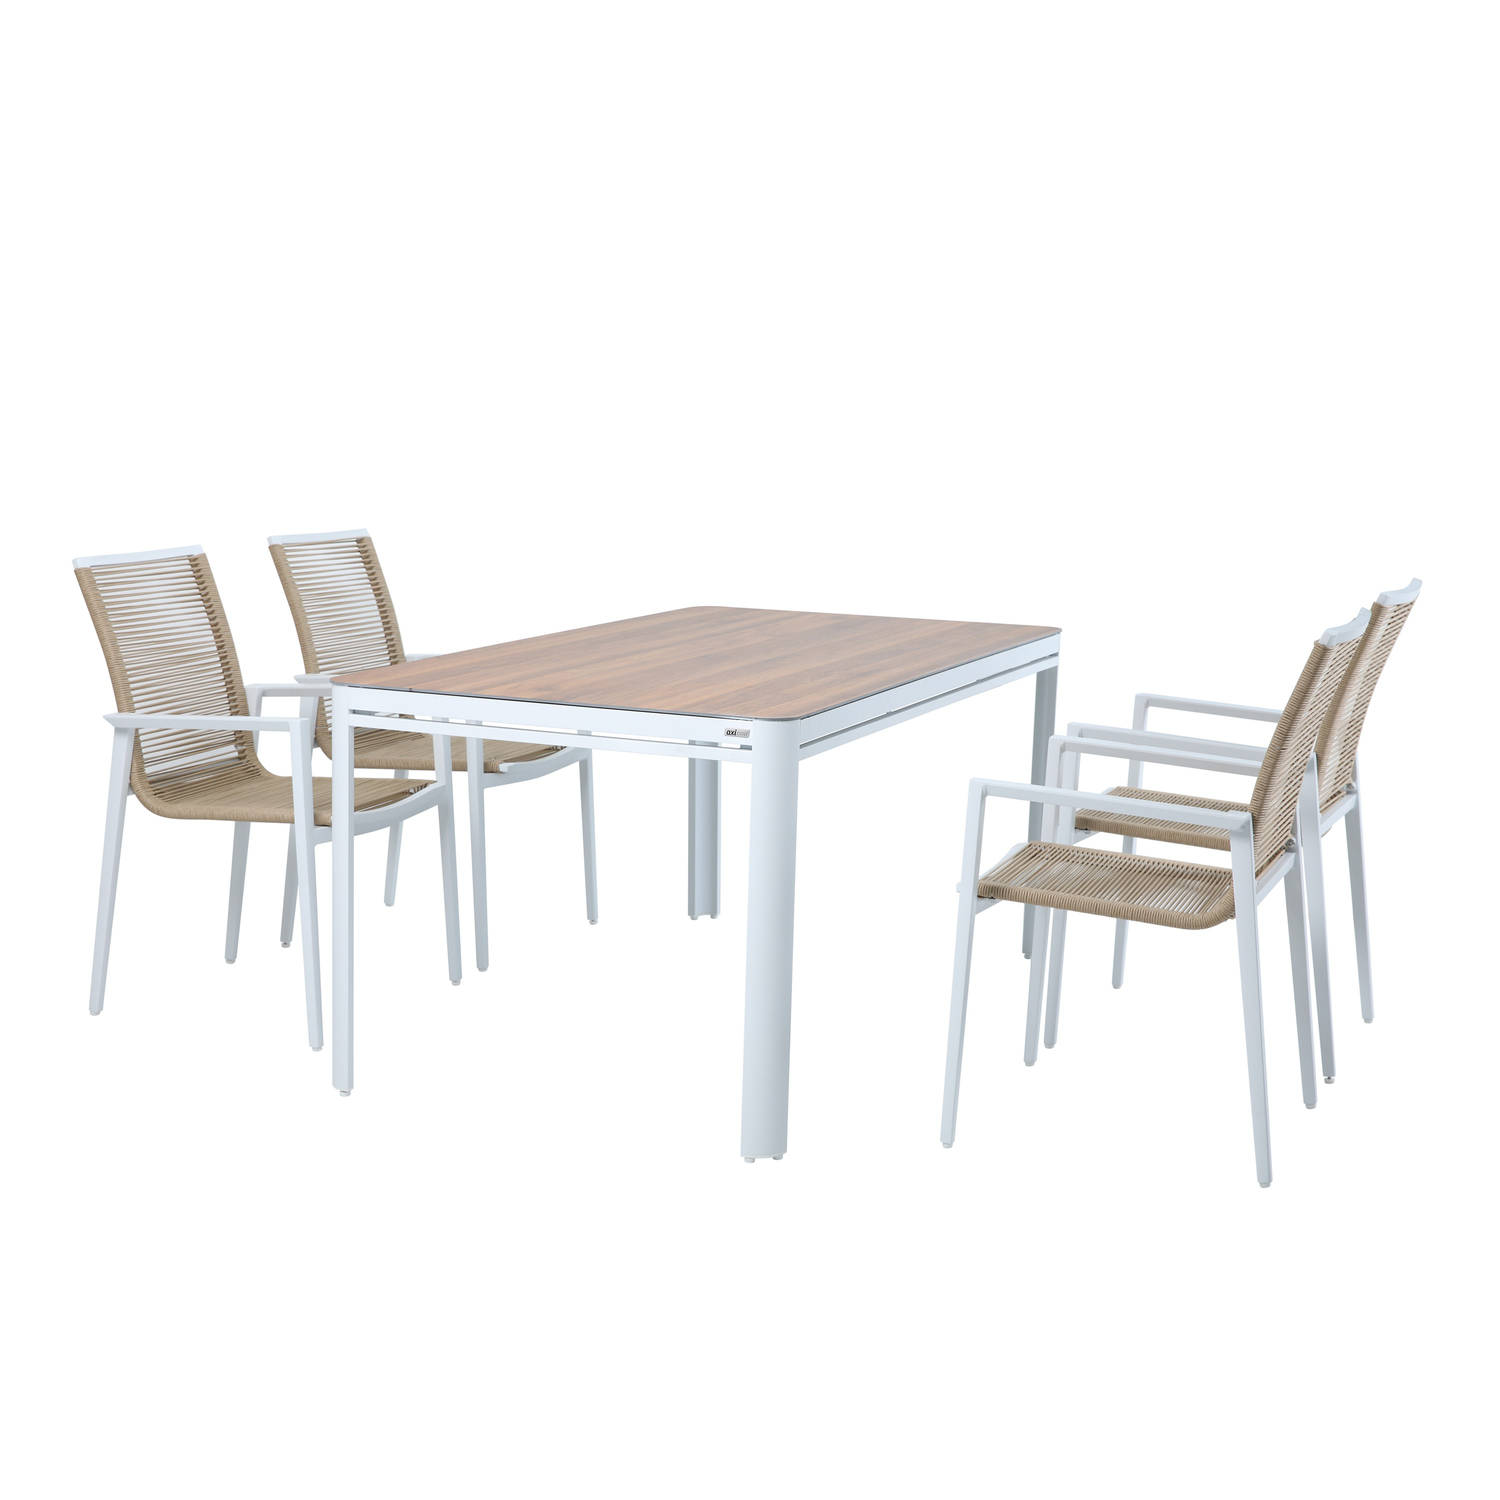 AXI Zora Tuinset met 4 stoelen in Wit & Hout look Dining set voor tuin in Aluminium-PSPC